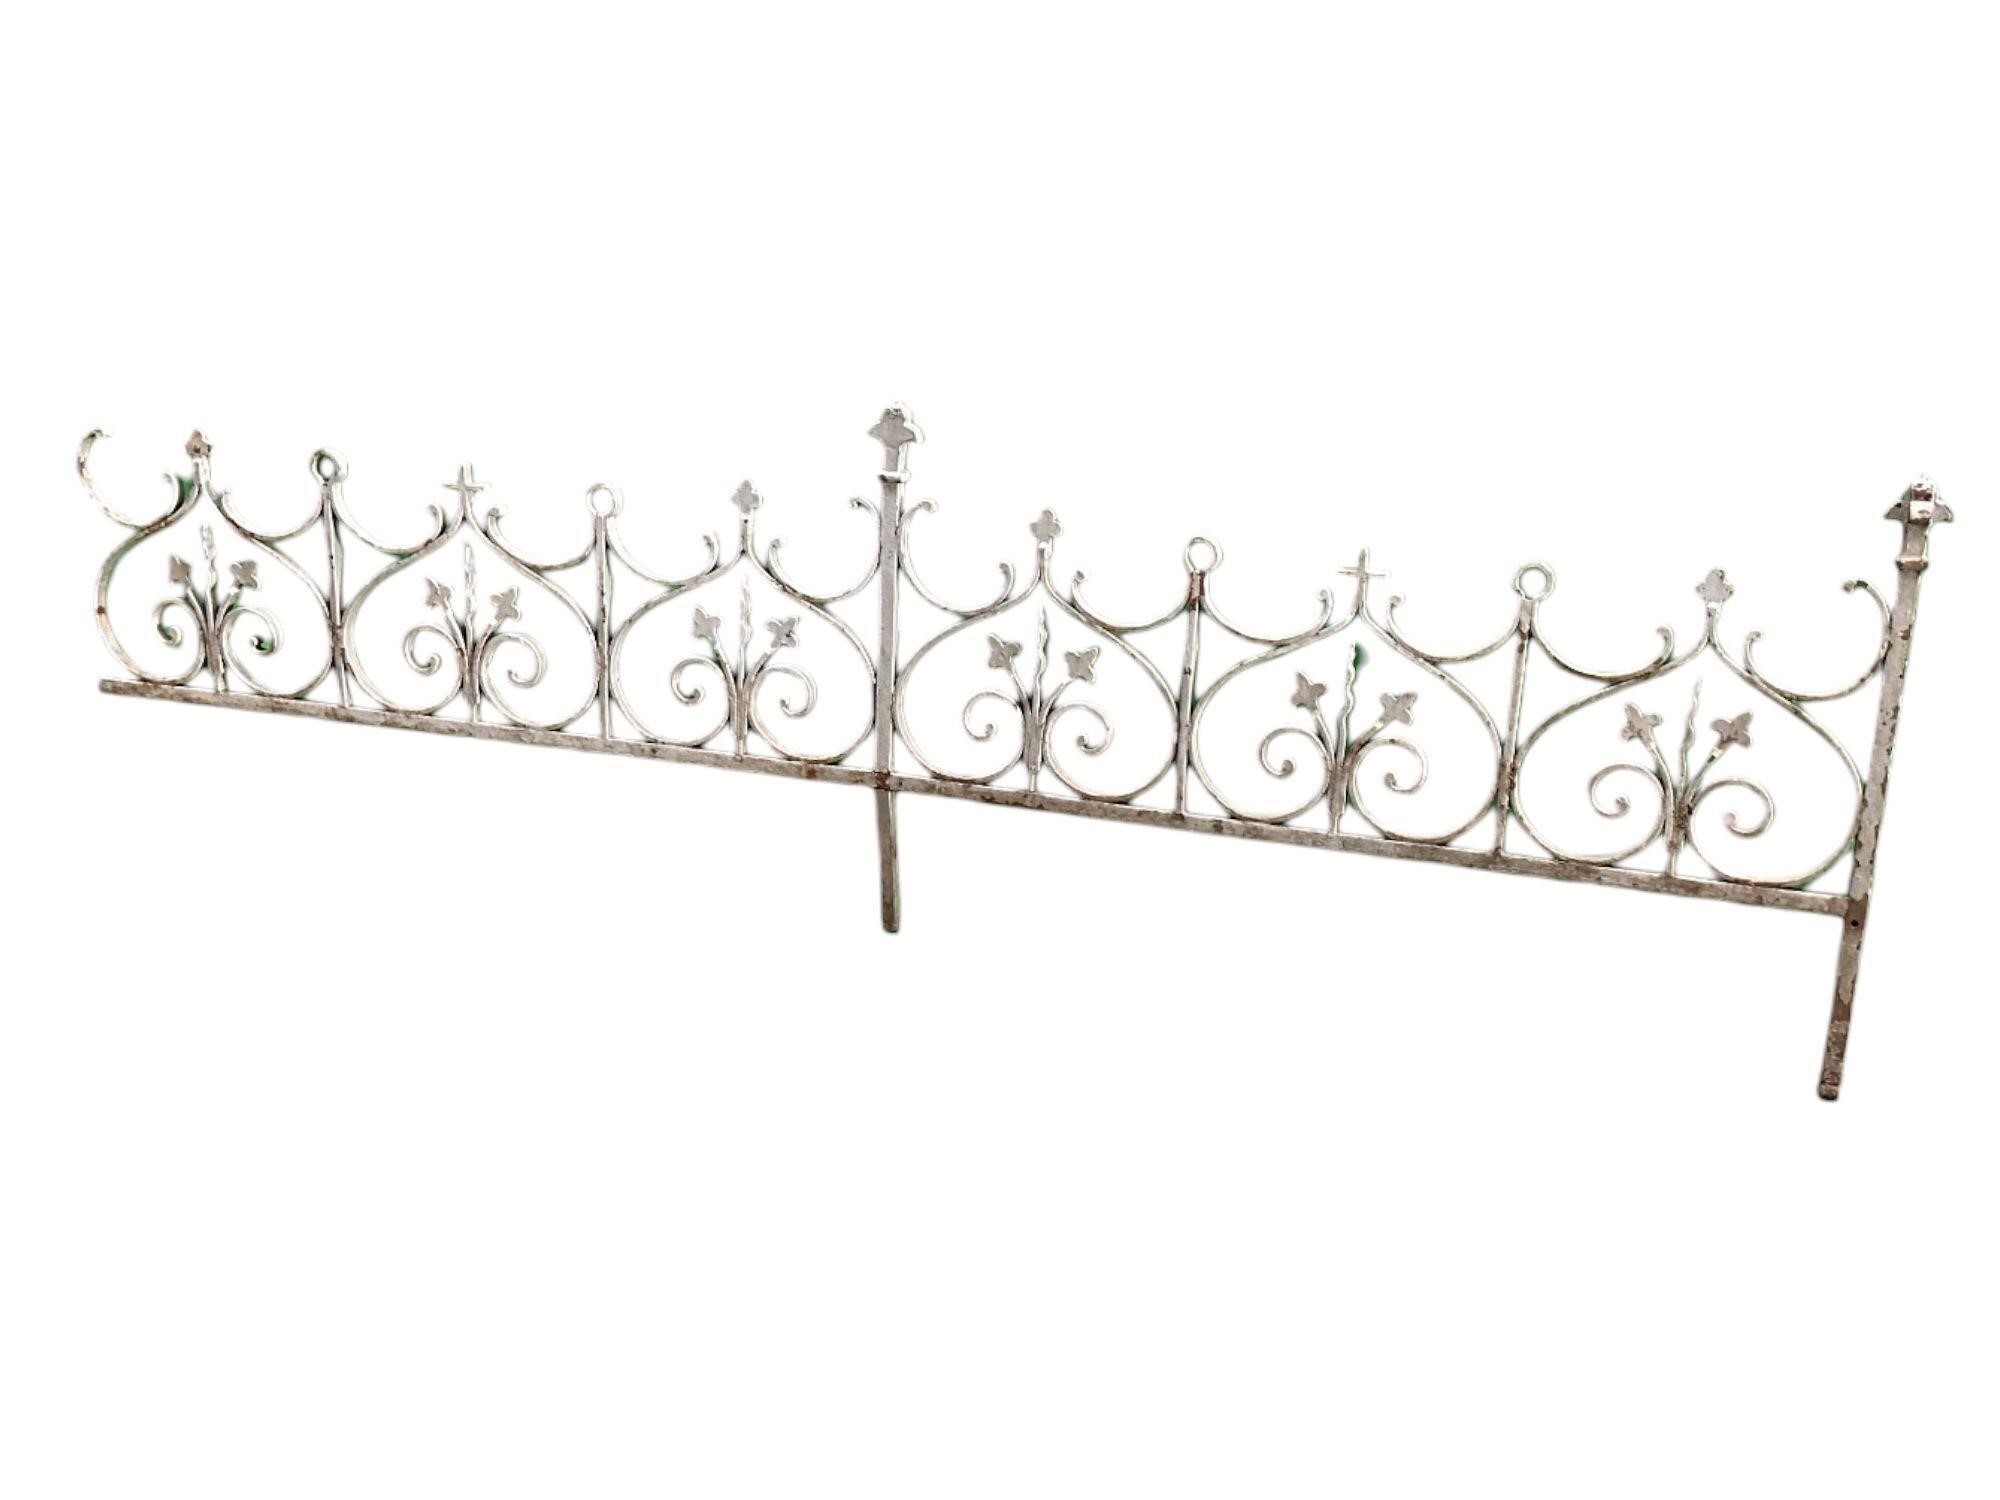 French Iron Decorative Fence Panel